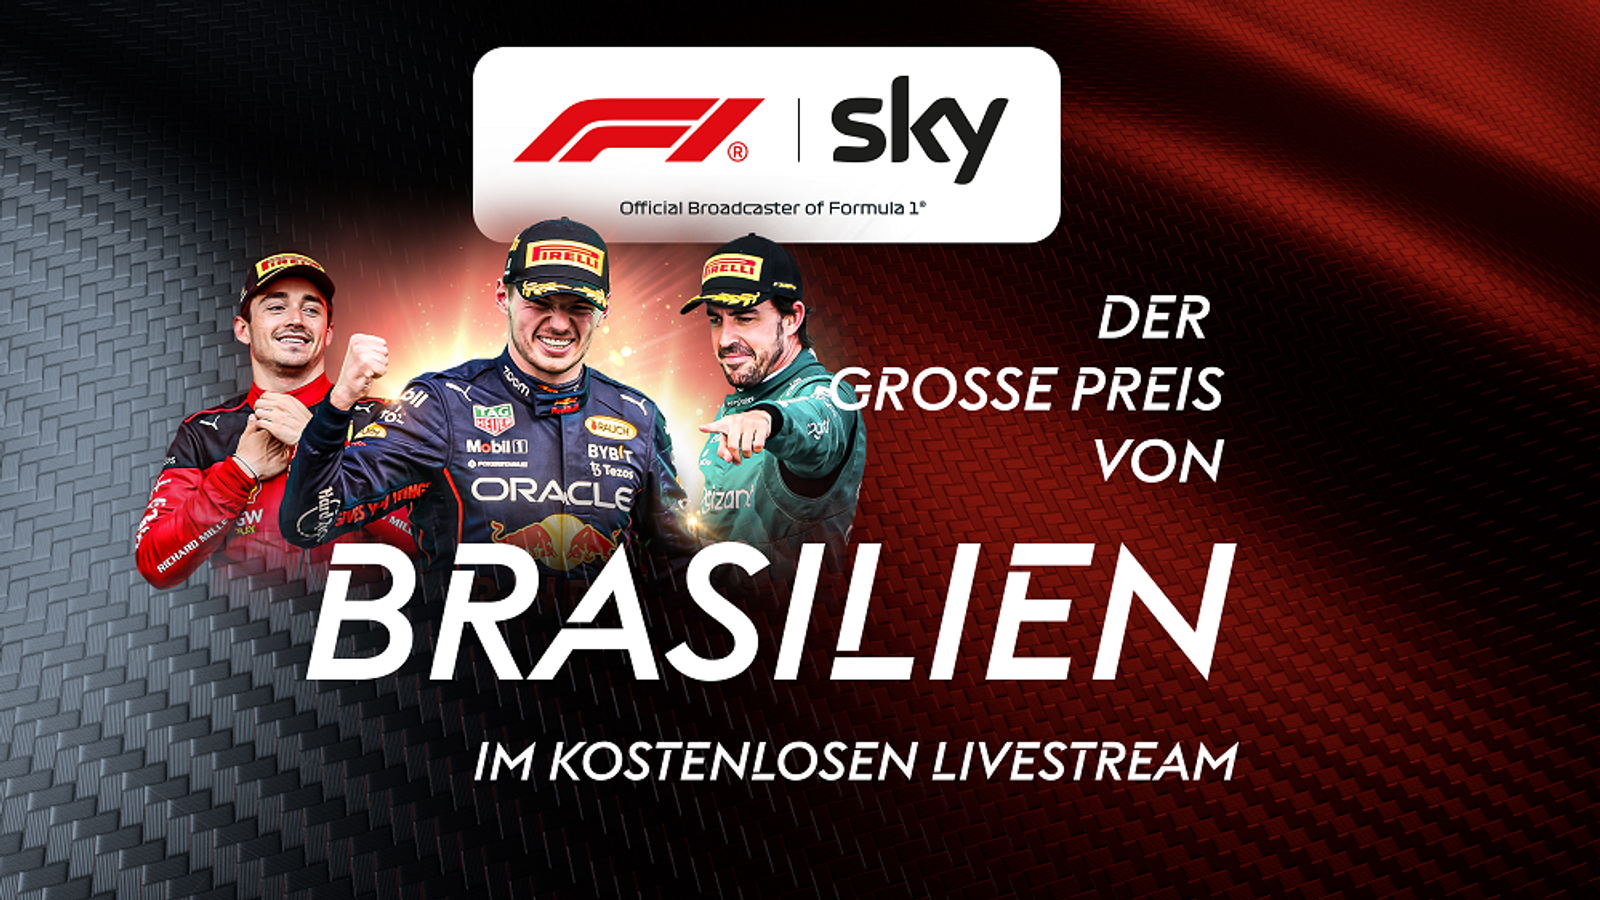 Sky EXKLUSIV Formel 1 LIVE für alle GP von Brasilien im kostenlosen Stream Formel 1 News Sky Sport